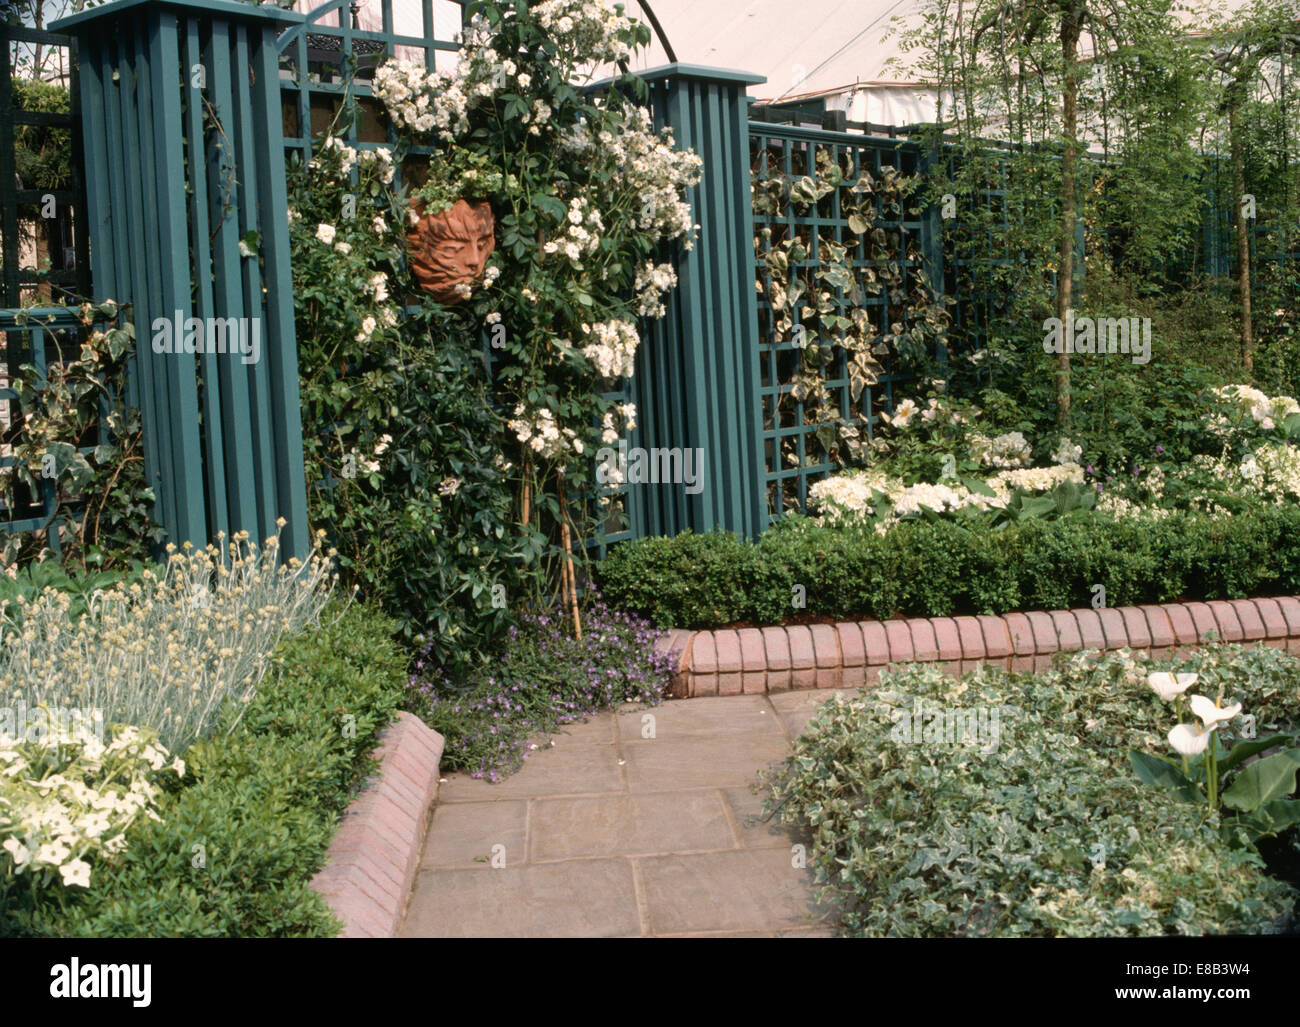 Weiße Rosen auf Zaun mit Säulen im Stadtgarten mit duftenden Pflanzen wachsen in Grenze mit gemauerten Einfassung neben Weg Stockfoto